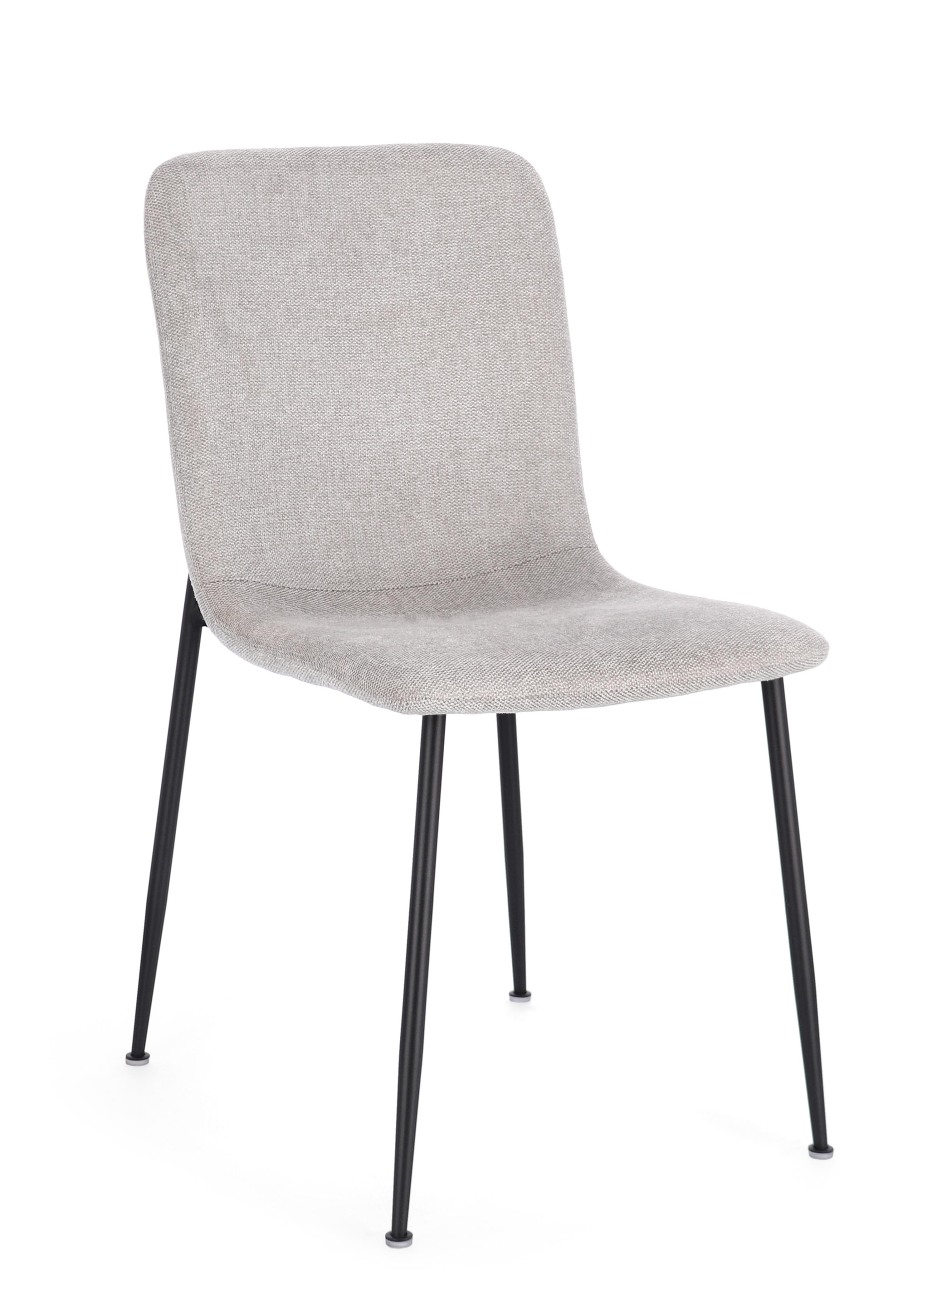 Der Esszimmerstuhl Rinas überzeugt mit seinem modernen Stil. Gefertigt wurde er aus Stoff, welcher einen hellgrauen Farbton besitzt. Das Gestell ist aus Metall und hat eine schwarze Farbe. Der Stuhl besitzt eine Sitzhöhe von 46 cm.